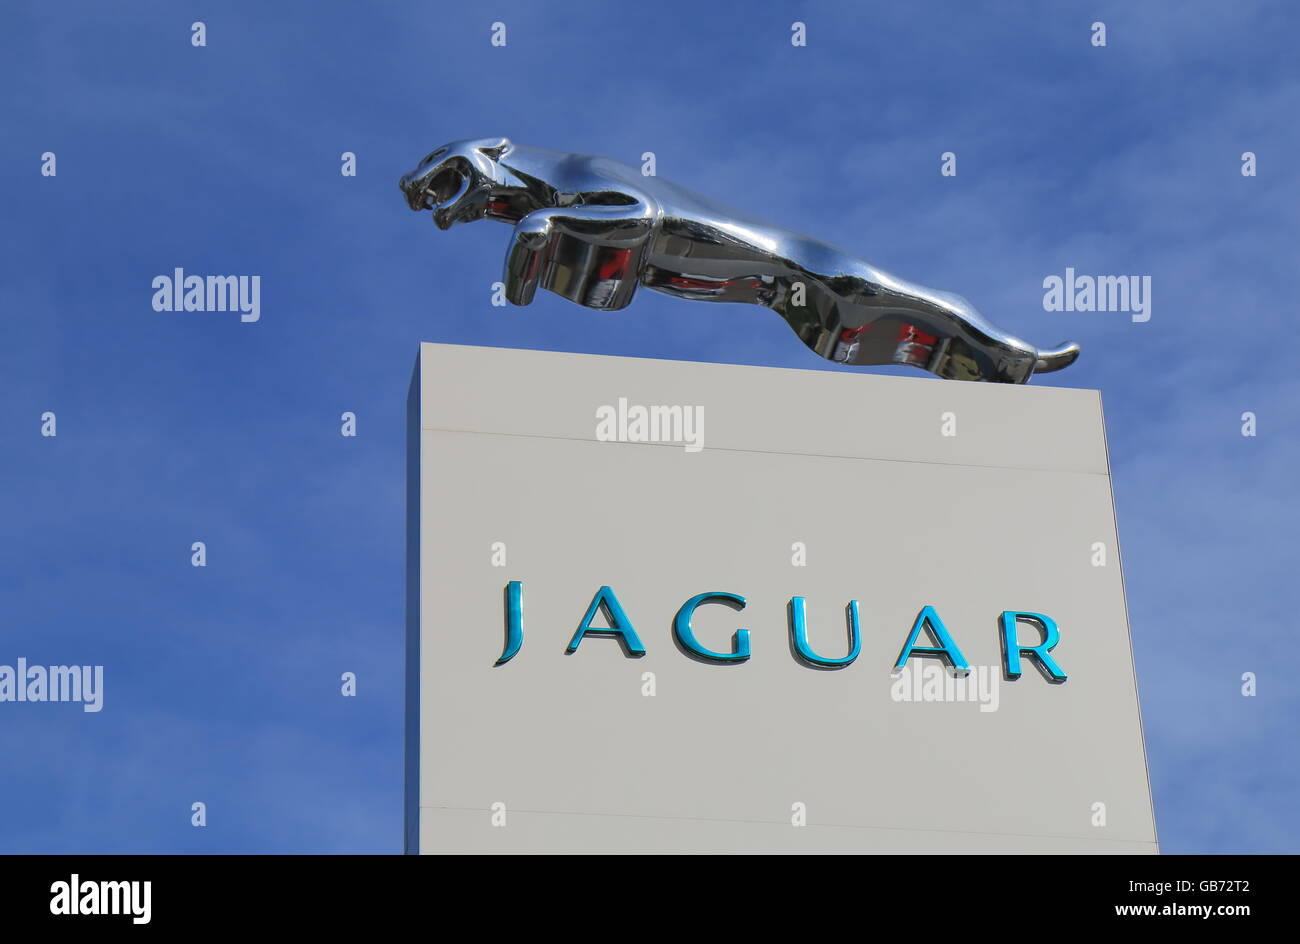 Jaguar car manufacturer Stock Photo